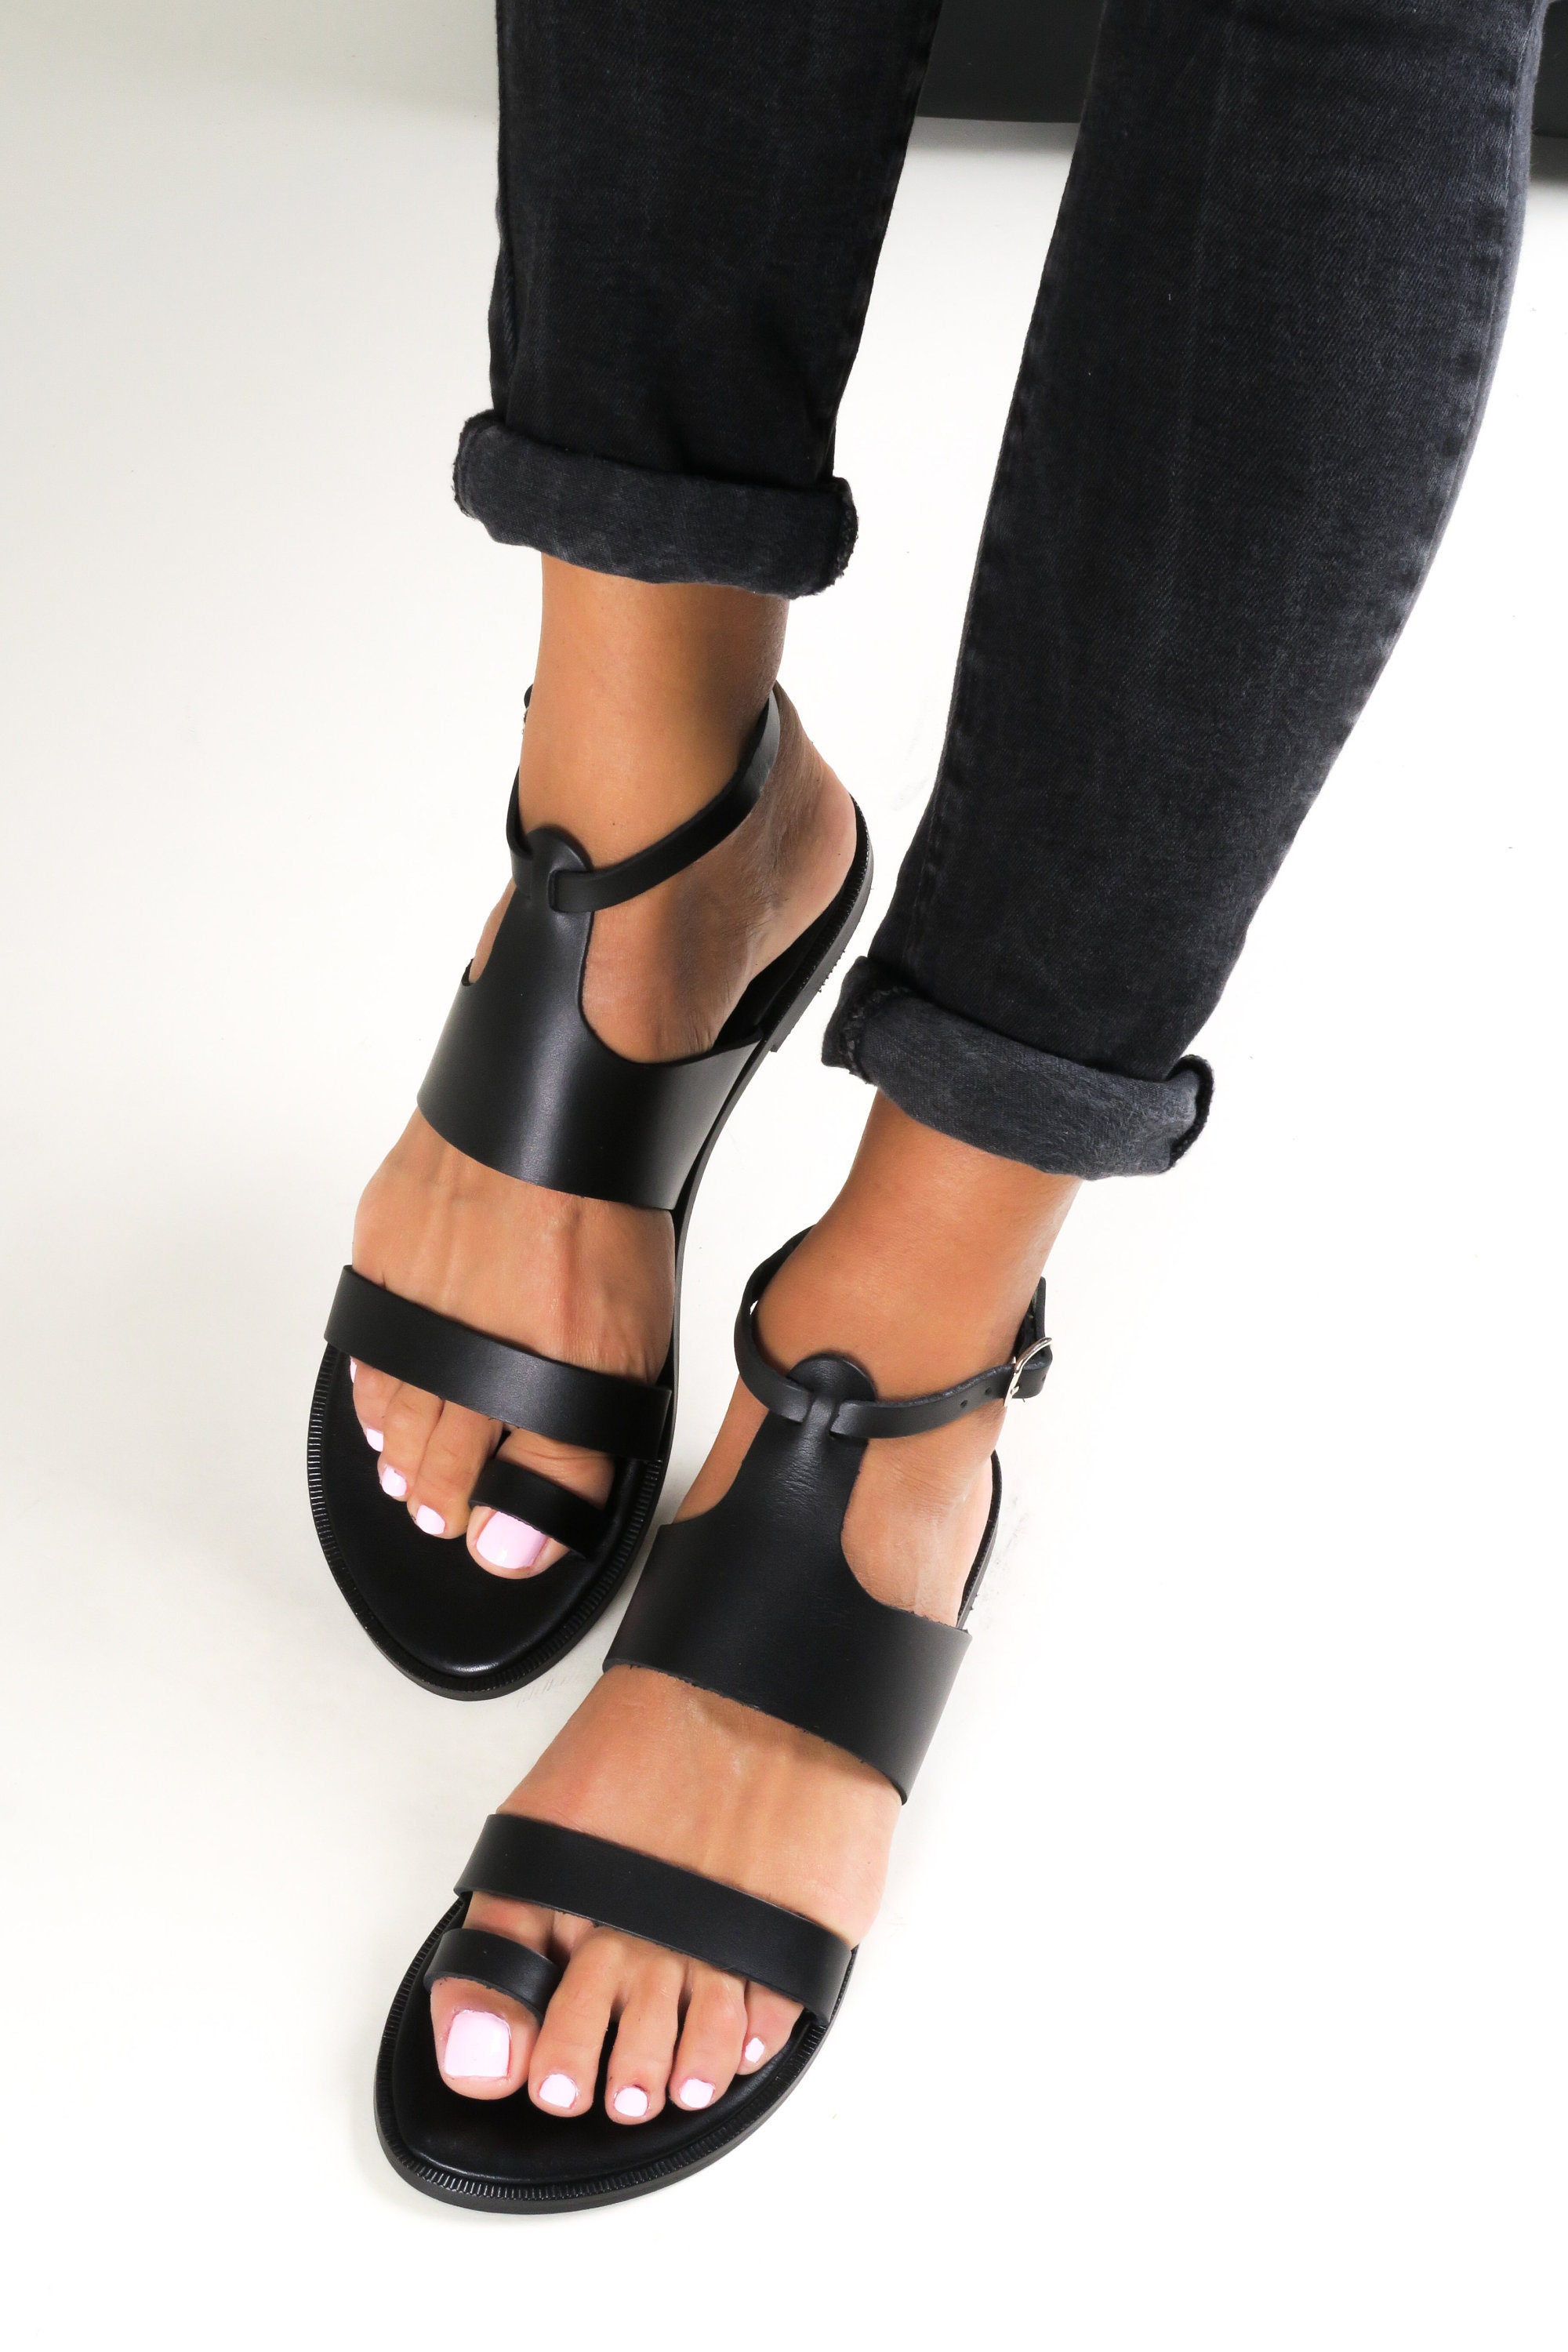 Greek Sandals for Women, Leather Gladiator Sandals, Sandales Grecques ...